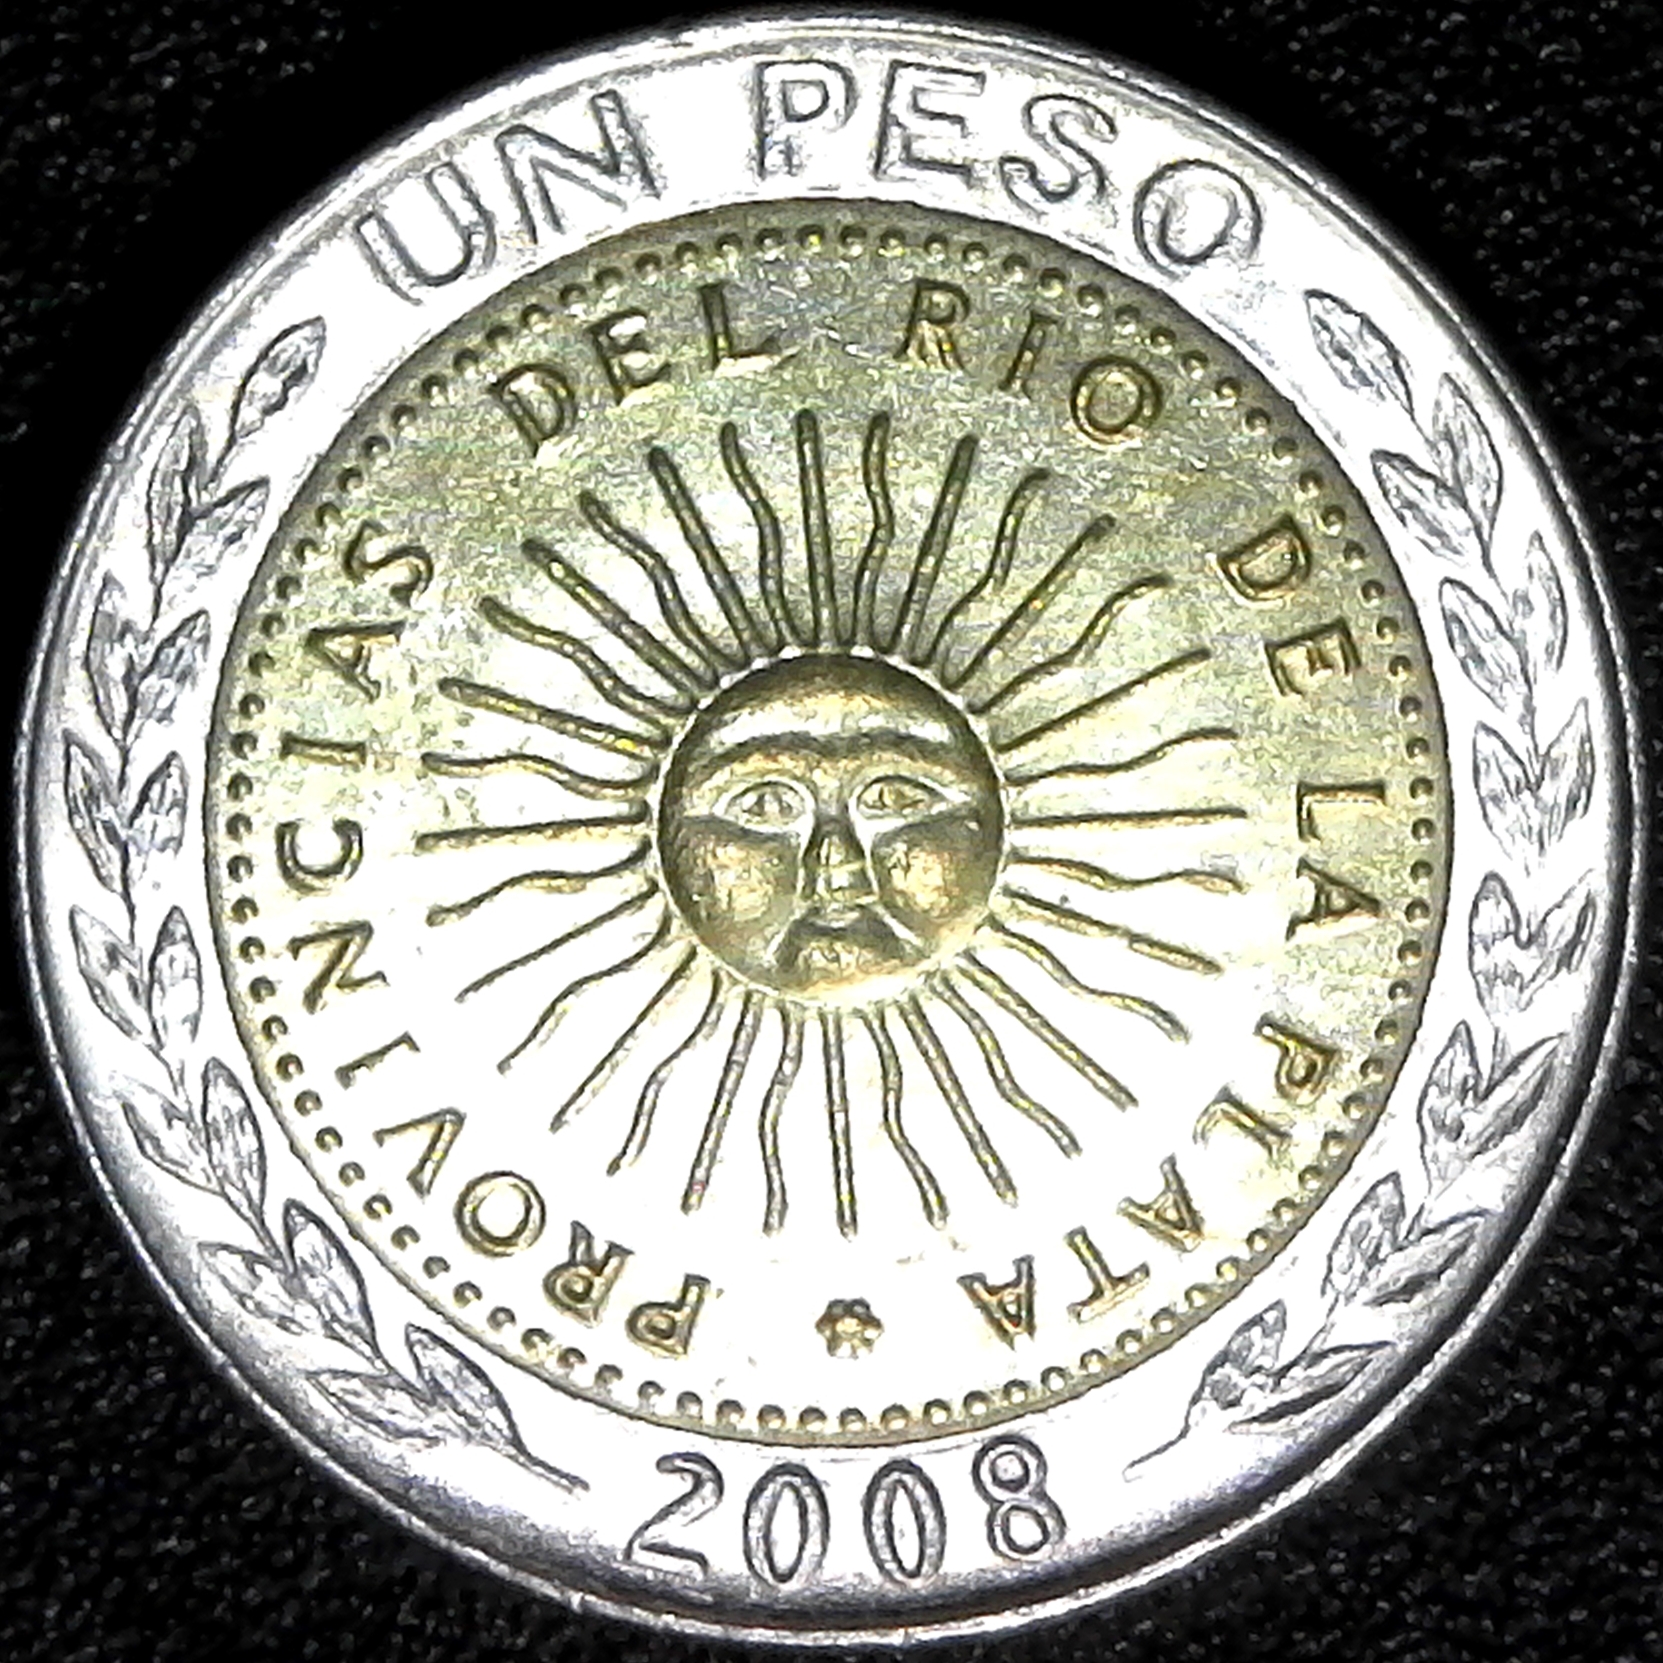 Argentina 1 Peso 2008 rev.jpg